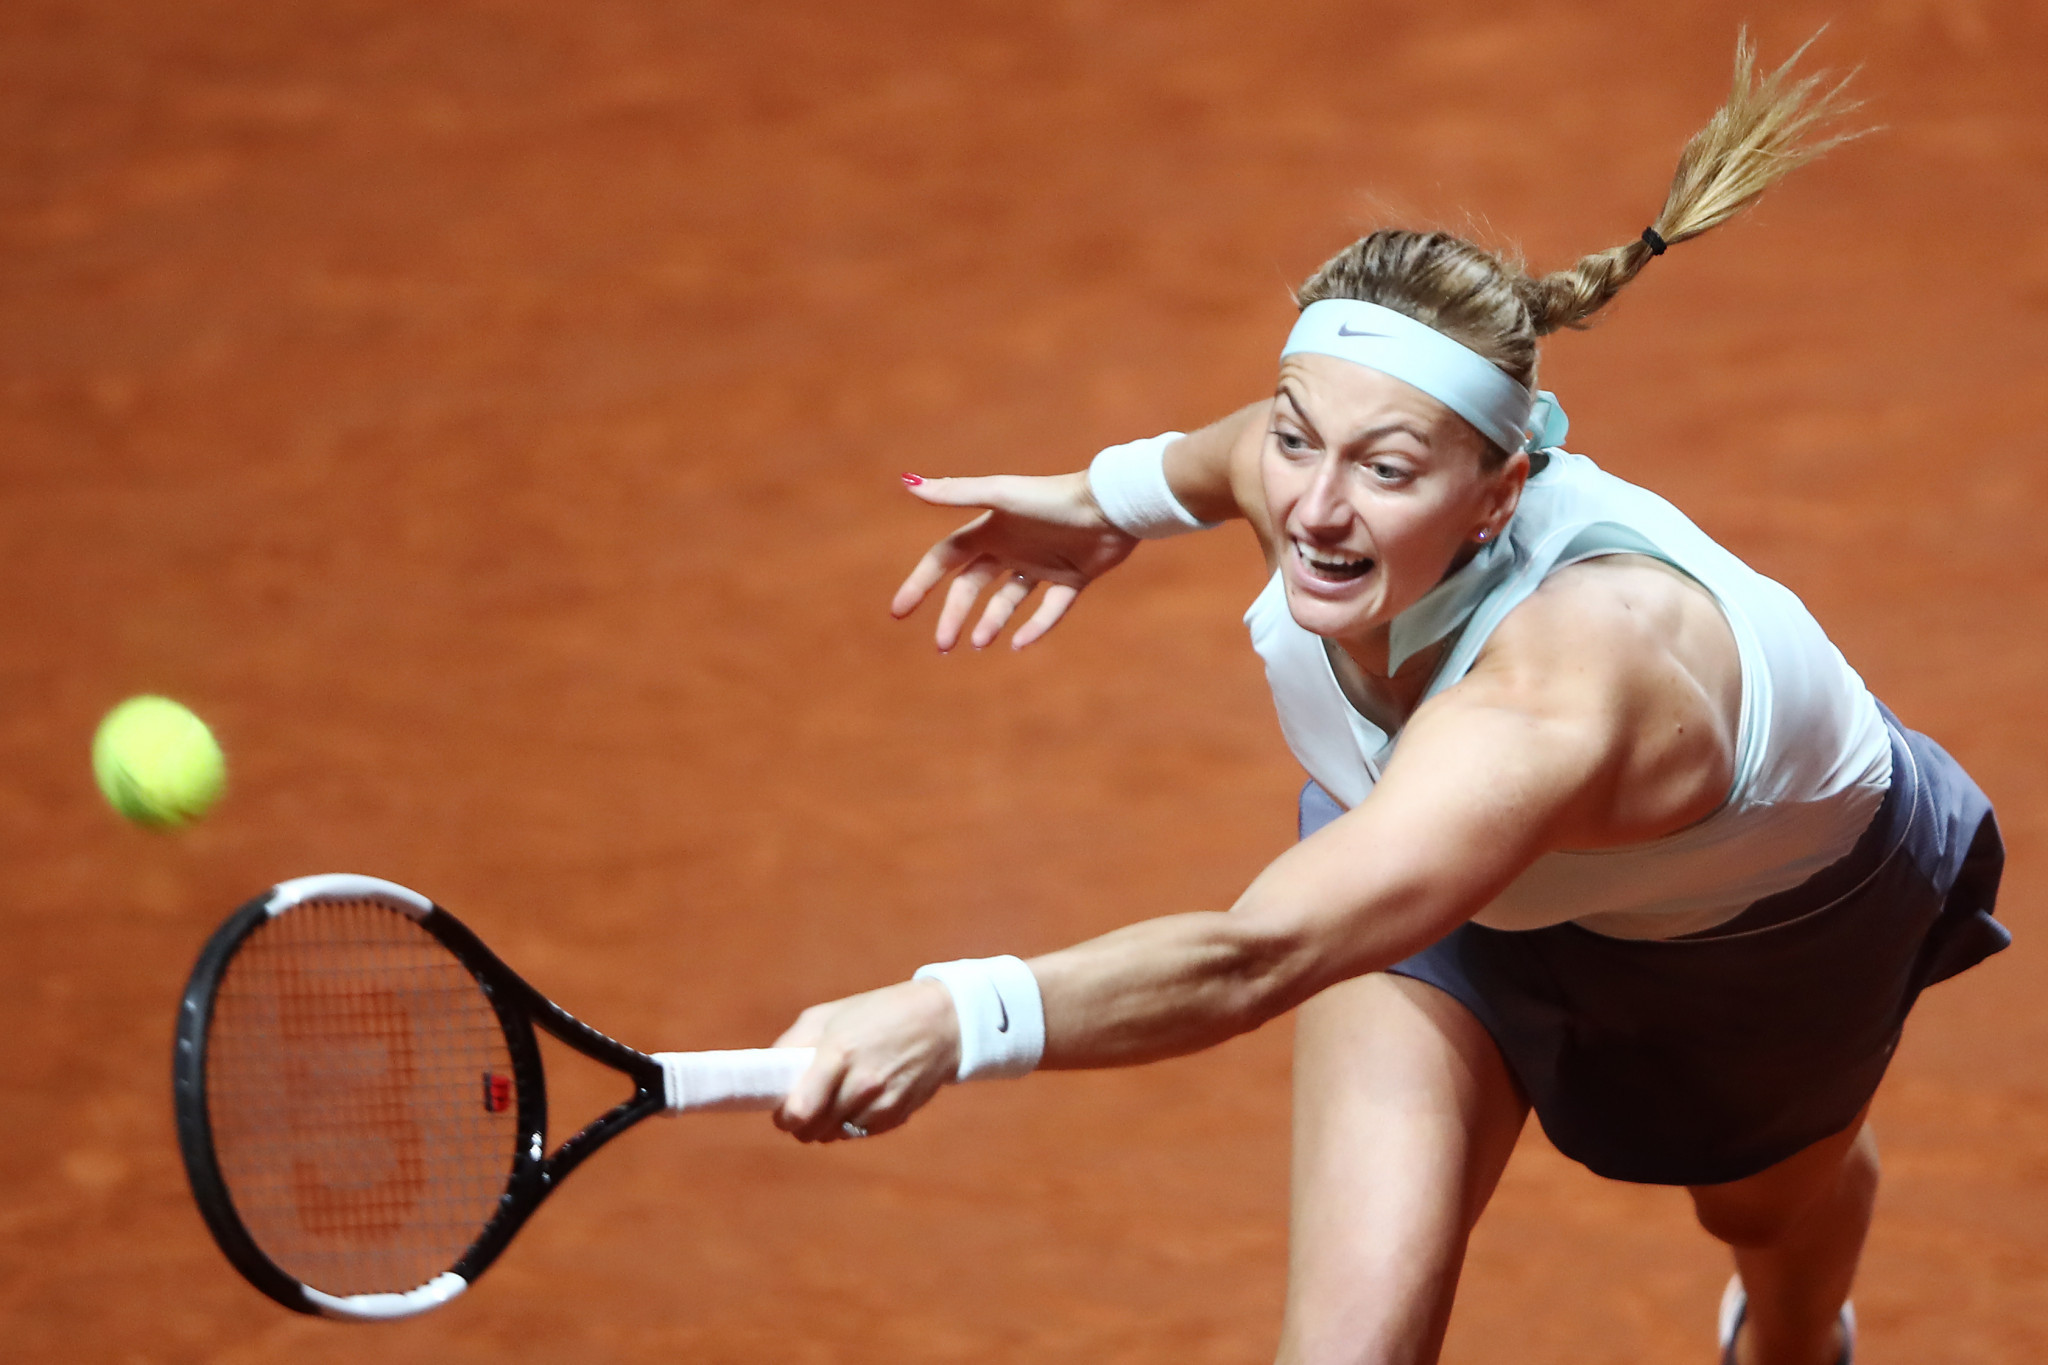 Kvitová beats Kontaveit to secure second title of season at WTA Stuttgart Open 